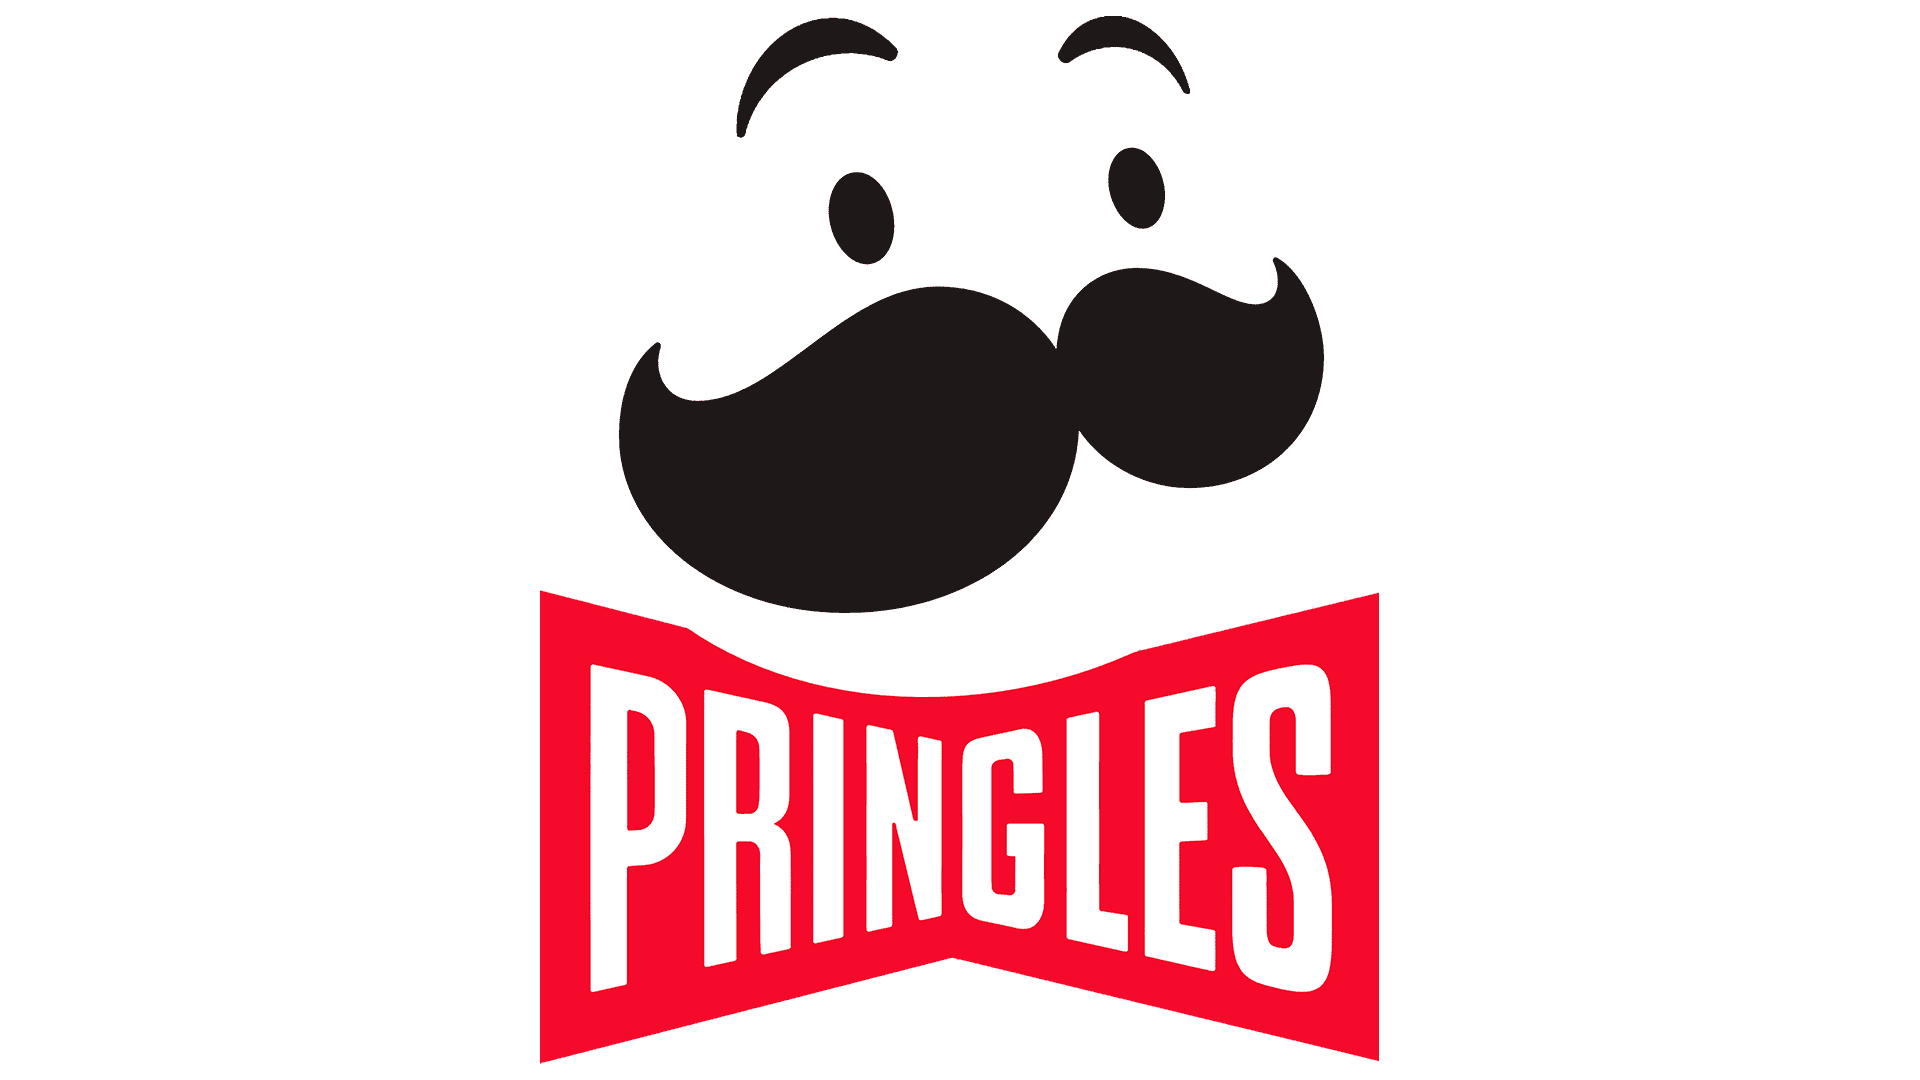 Pringles ändert zum ersten Mal seit 10 Jahren ihr Logo - Logo, zeichen ...